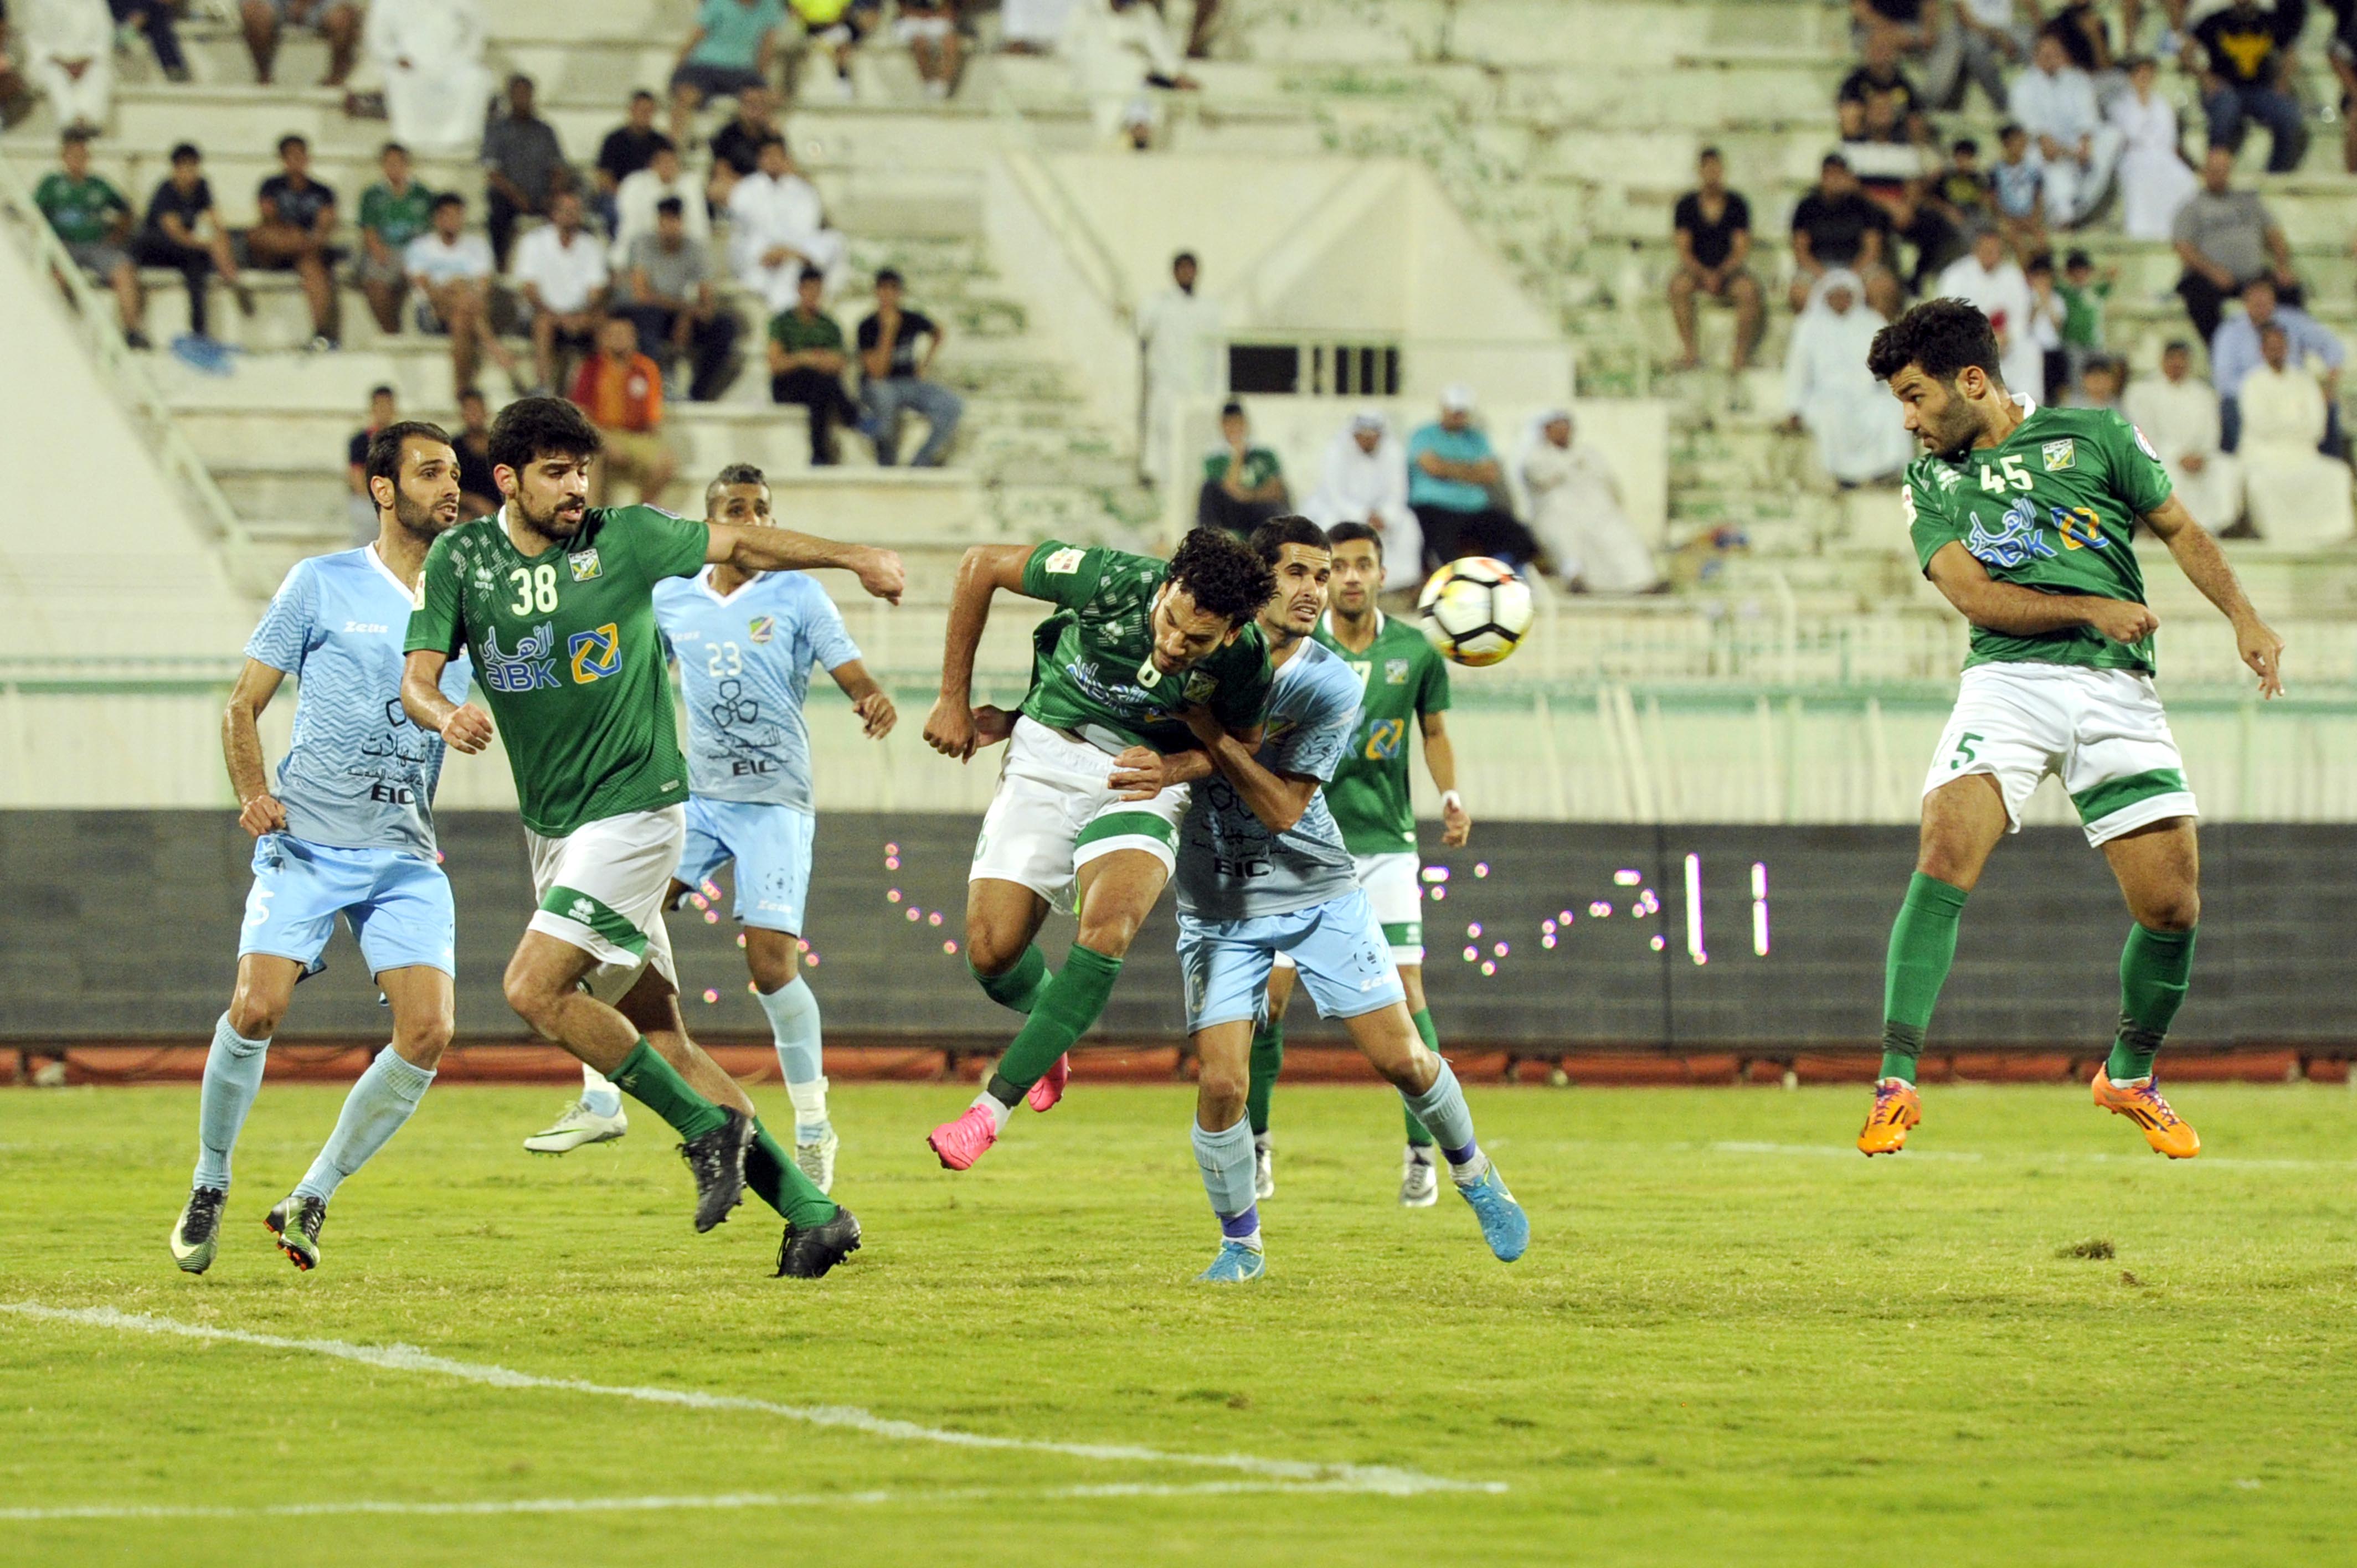 جانب من مباراة السالمية ونظيره العربي ضمن مباريات الاسبوع الخامس من بطولة دوري (فيفا) لكرة القدم